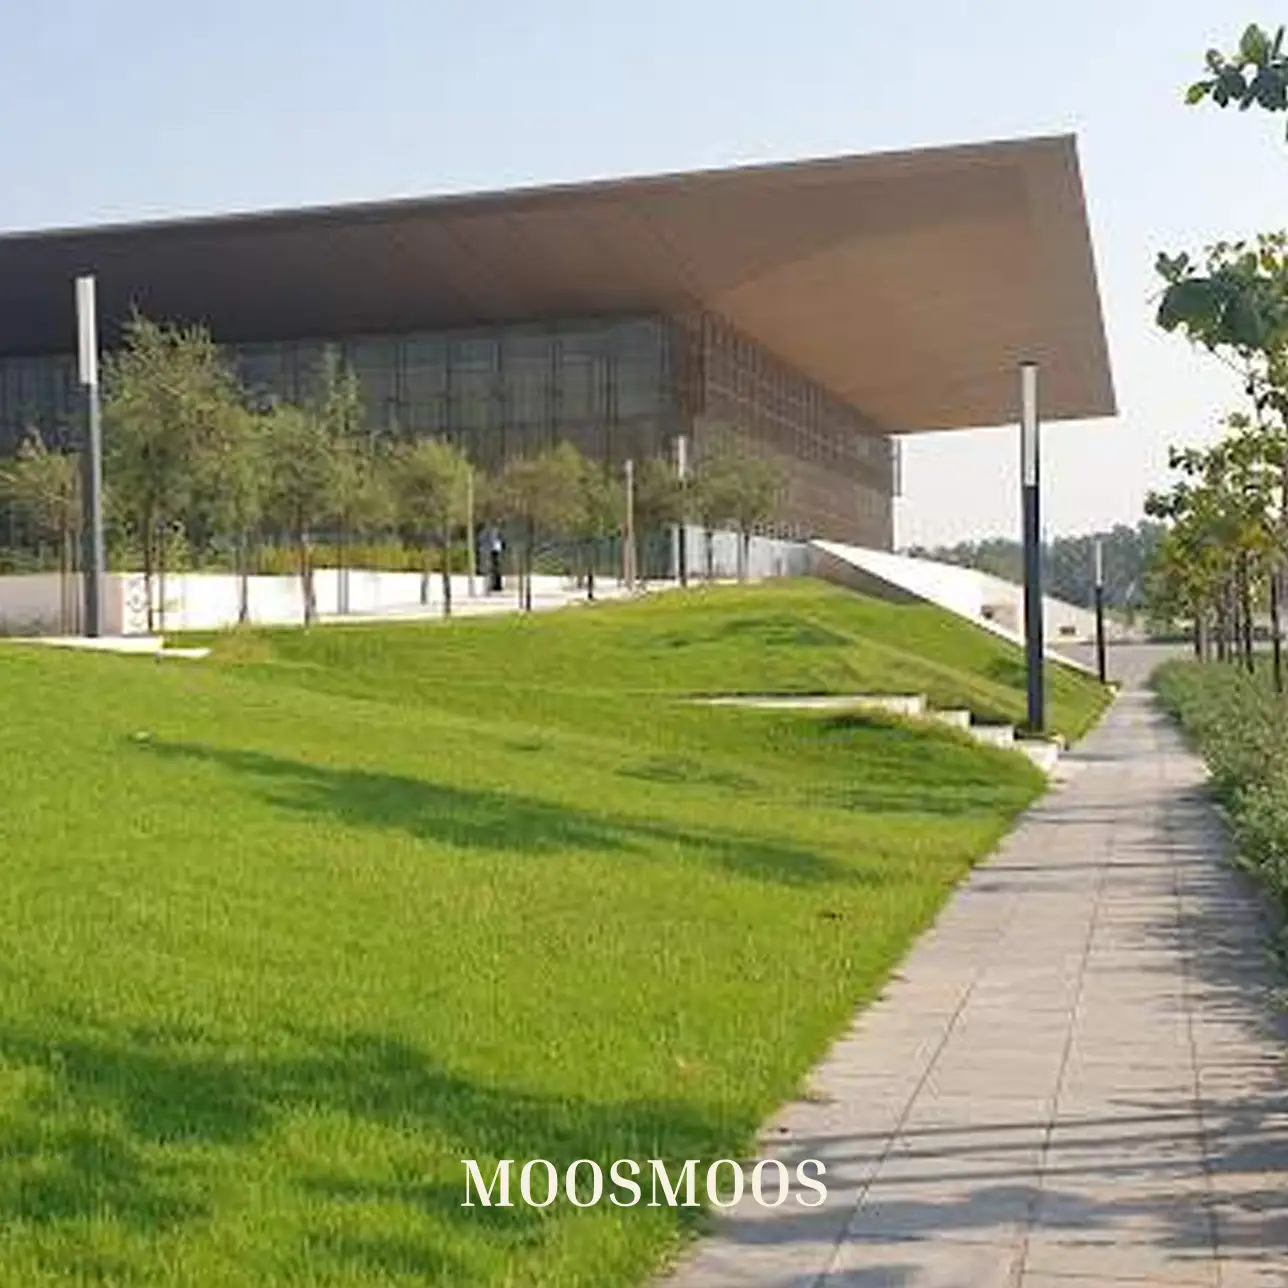 MOOSMOOS Vetrieb & Kundendienst für persönliche Beratung kunden für Mooswände, Moosdecken & Moosbilder & Außenfassadenbegrünung Green Concept